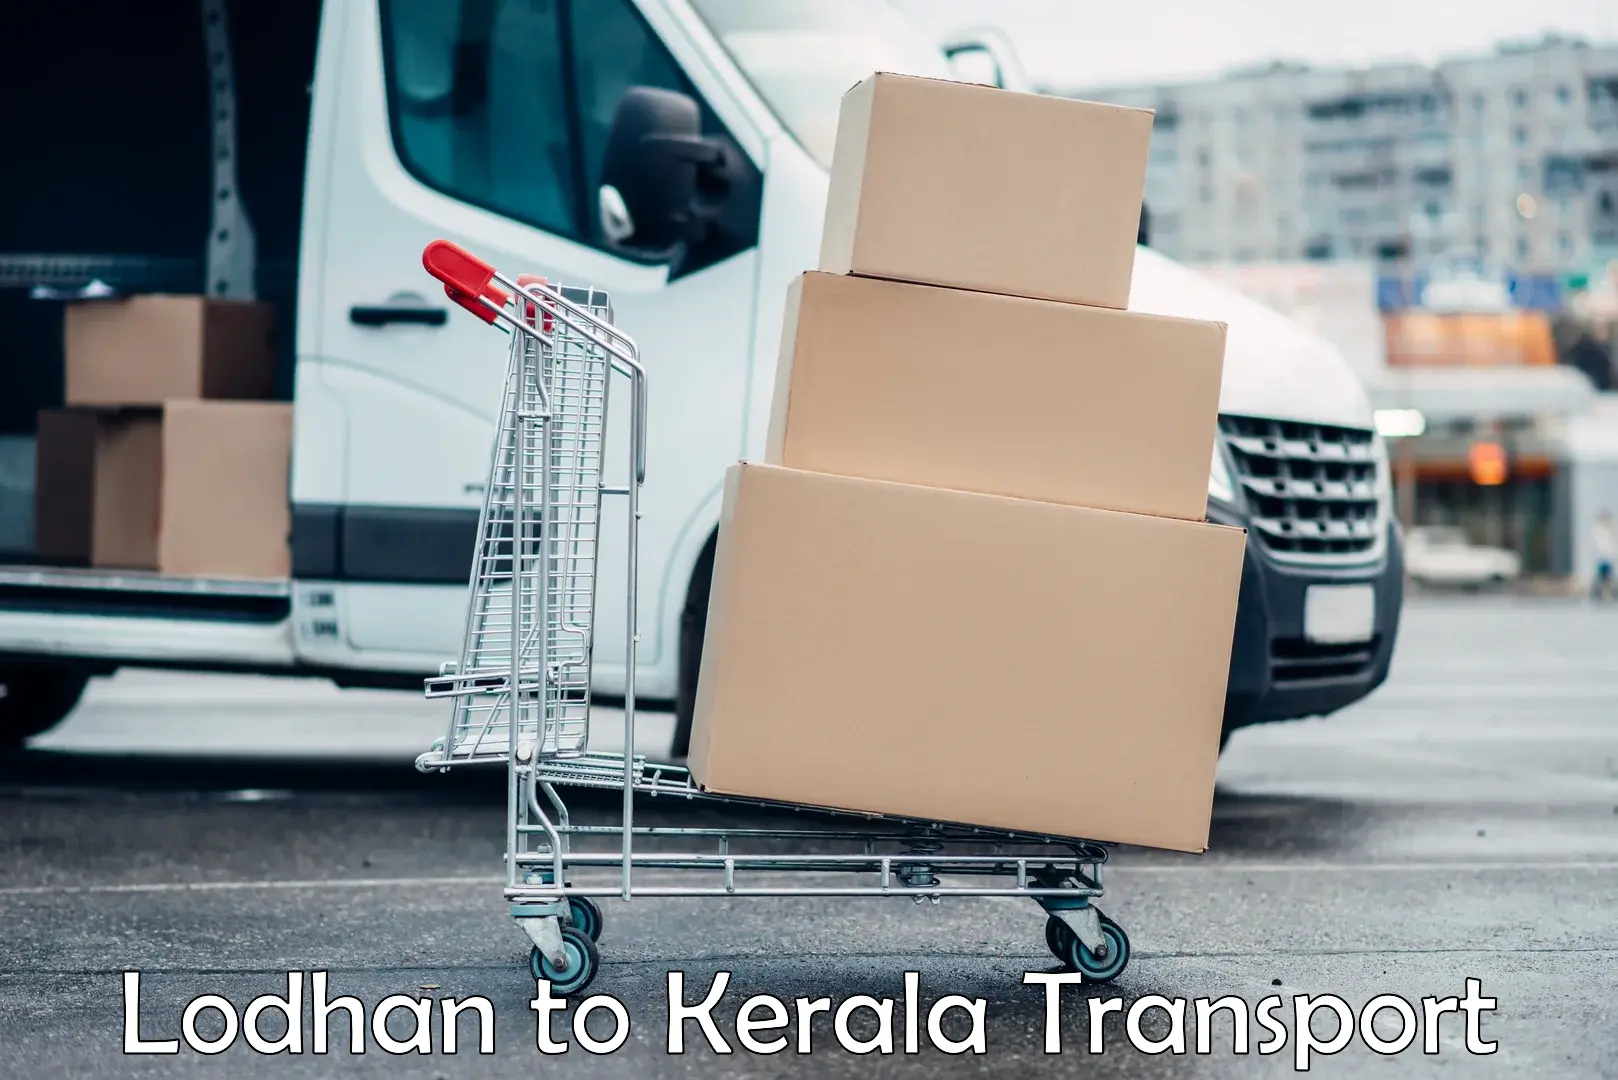 Two wheeler transport services Lodhan to Neyyattinkara